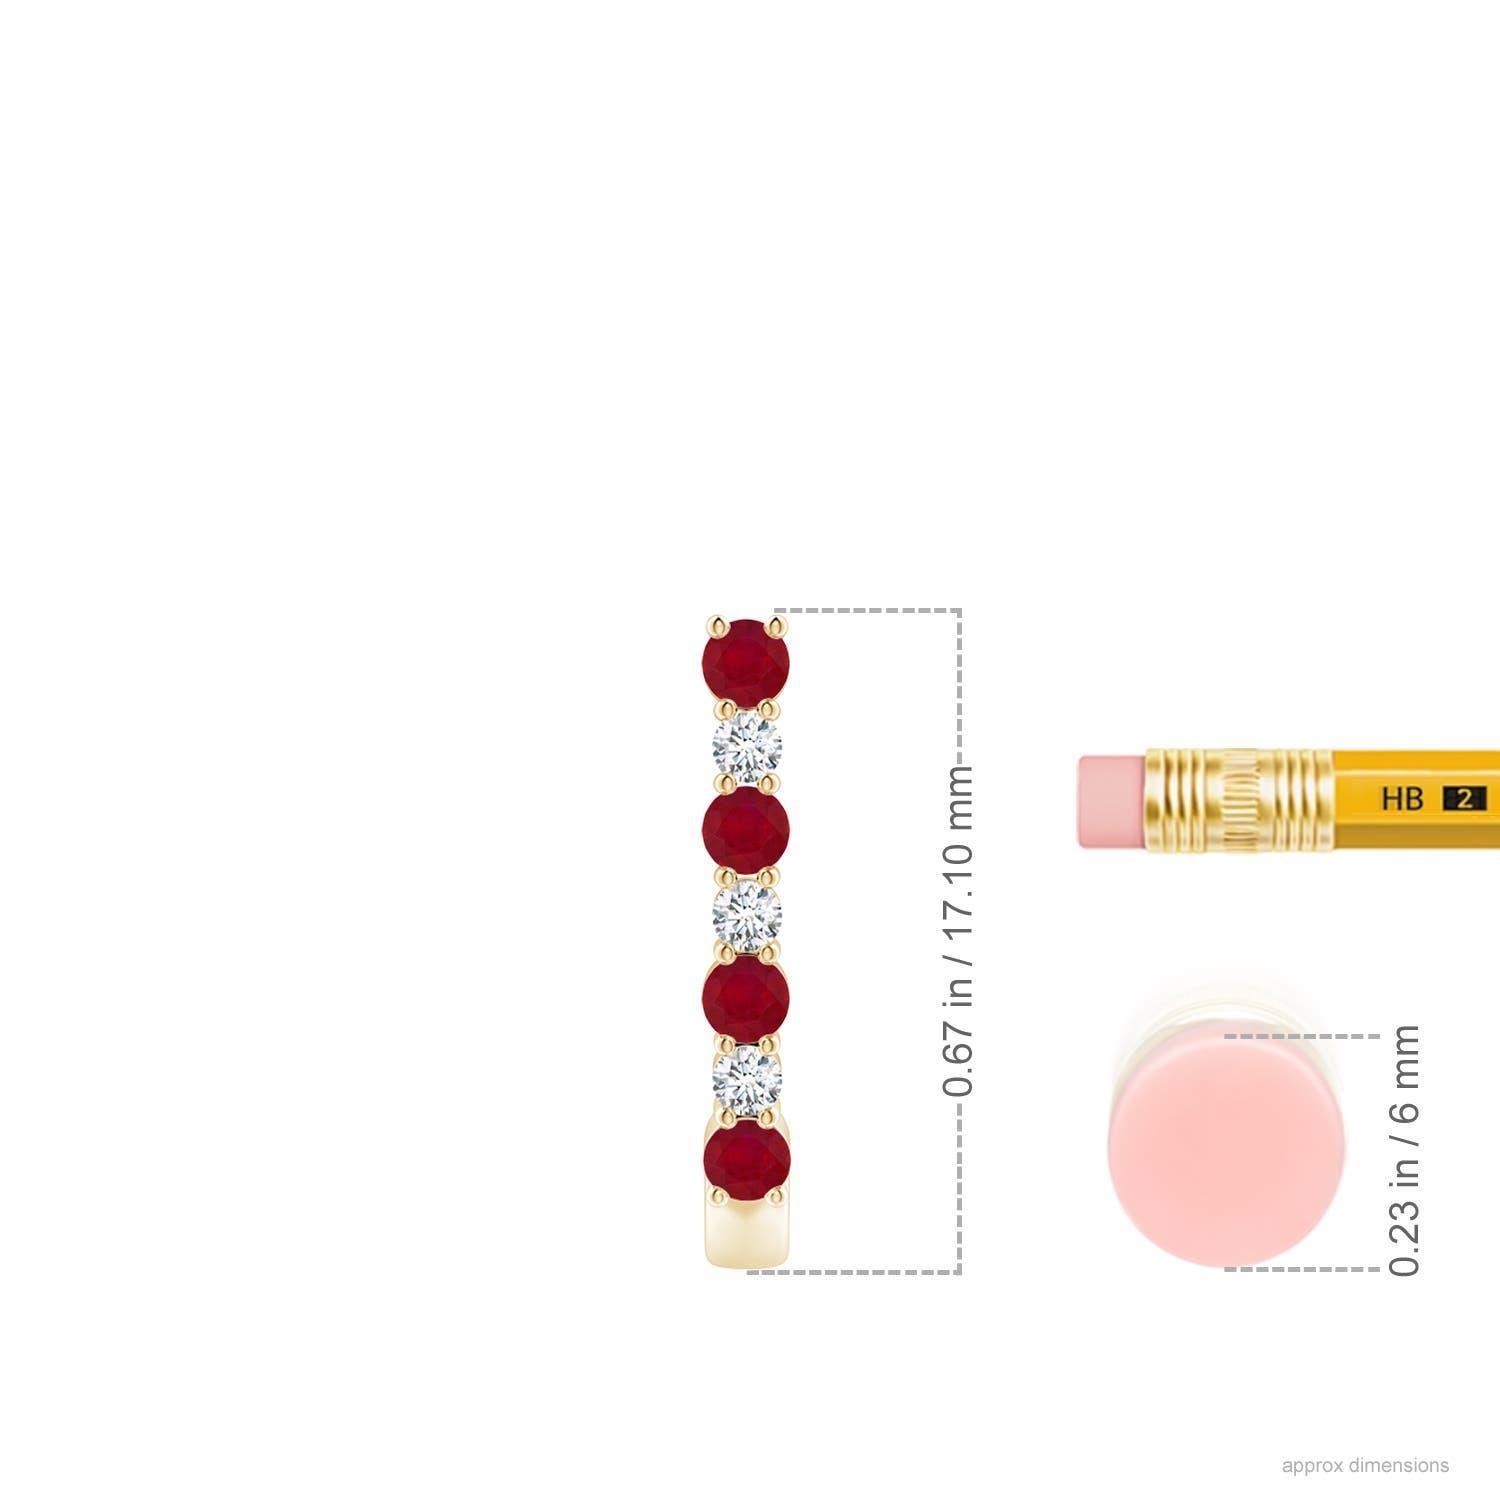 Diese atemberaubenden Rubin- und Diamant-Ohrringe sind aus 14-karätigem Gelbgold gefertigt. Die J-Ringe sind abwechselnd mit leuchtend roten Rubinen und funkelnden Diamanten besetzt, was einen fesselnden Effekt erzeugt.
Der Rubin ist der